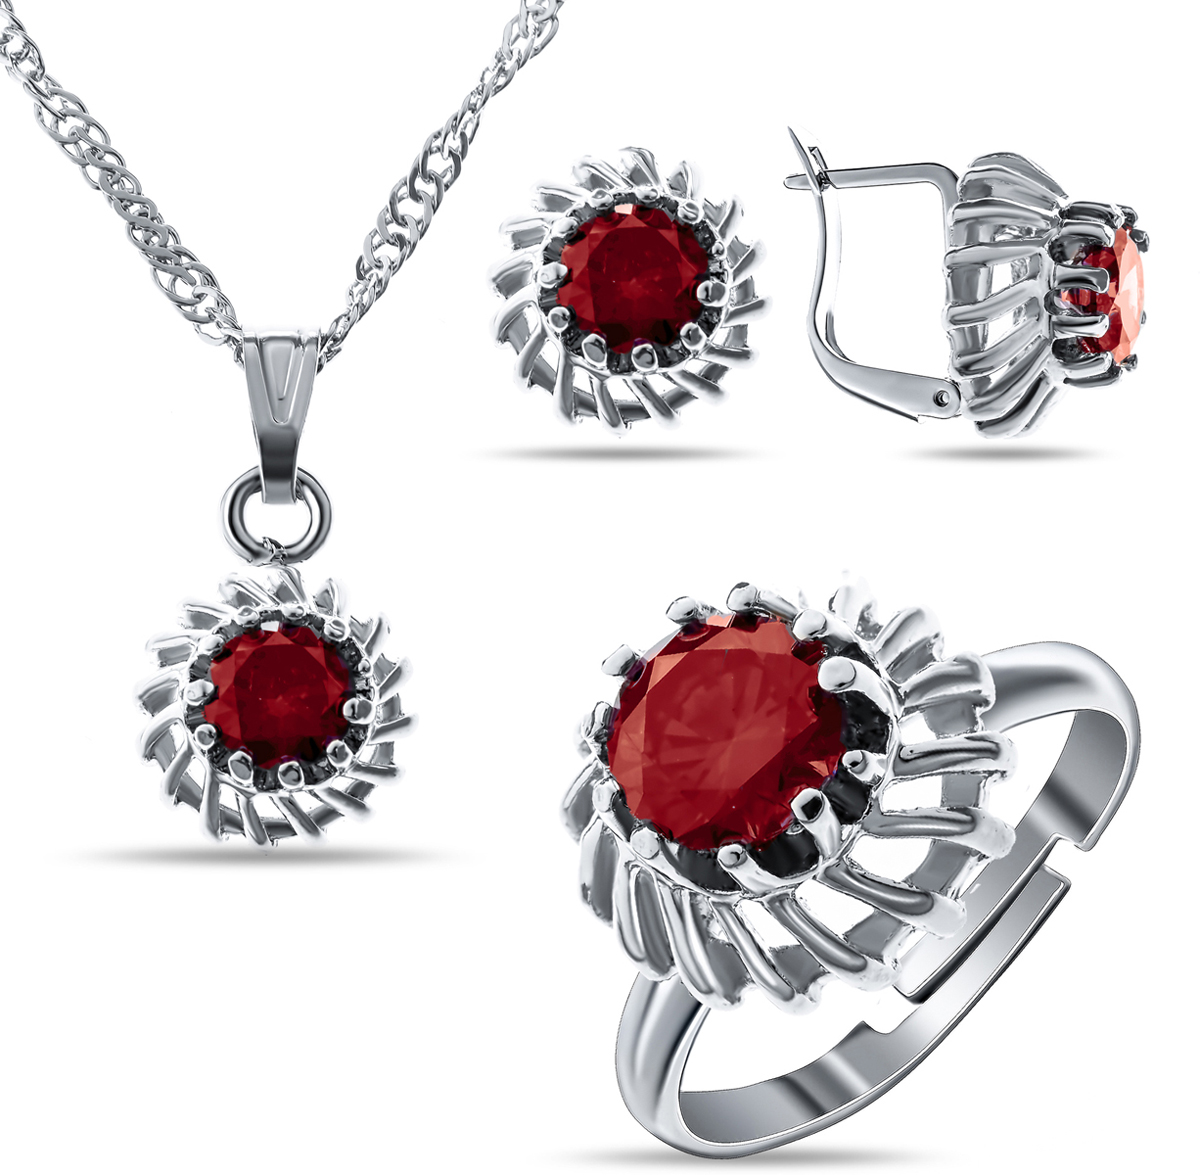 Комплект украшений Teosa: колье, серьги, кольцо, цвет: серебряный, красный. T-SET-123